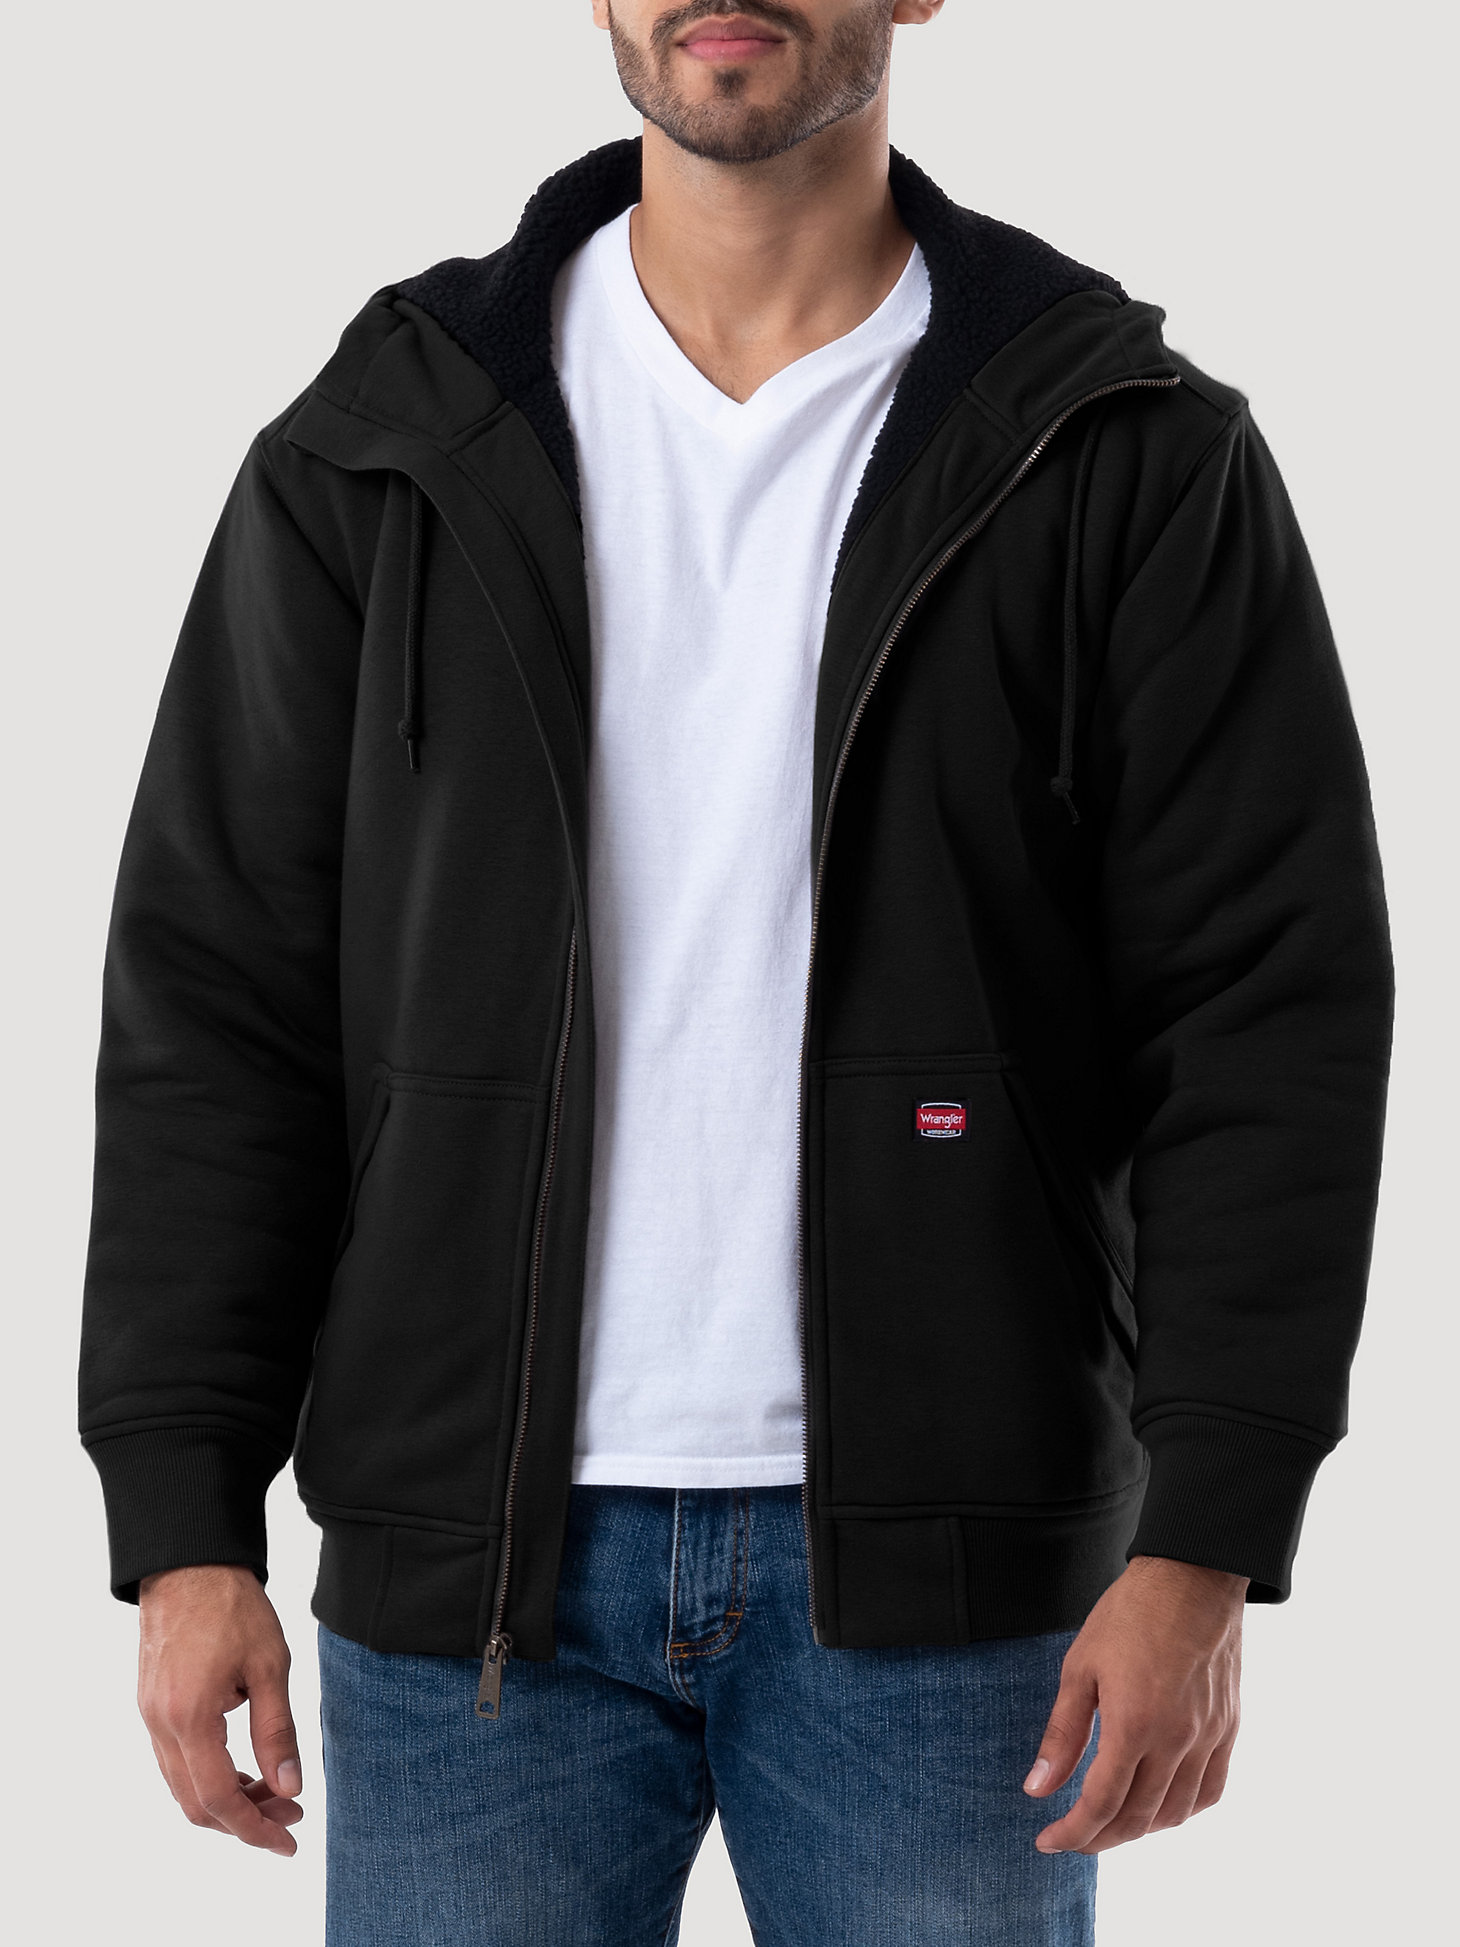 Wrangler® Workwear Sherpa Lined Hooded Sweatshirt in Black alternative view 1